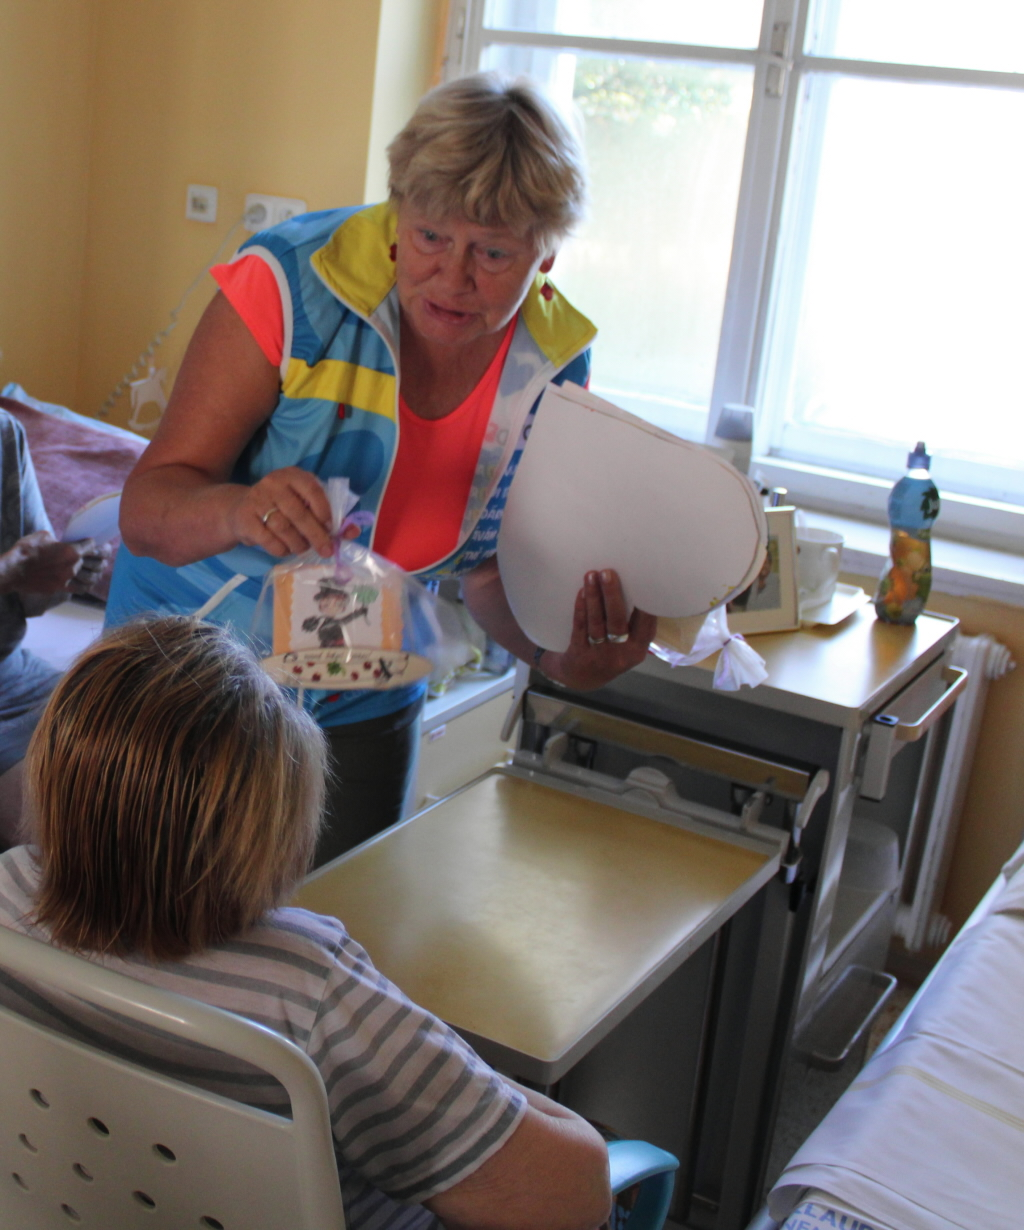 Dobrovolníci potěšili pacienty oddělení následné péče dárky k Mezinárodnímu dni seniorů. Foto: Petr Novák